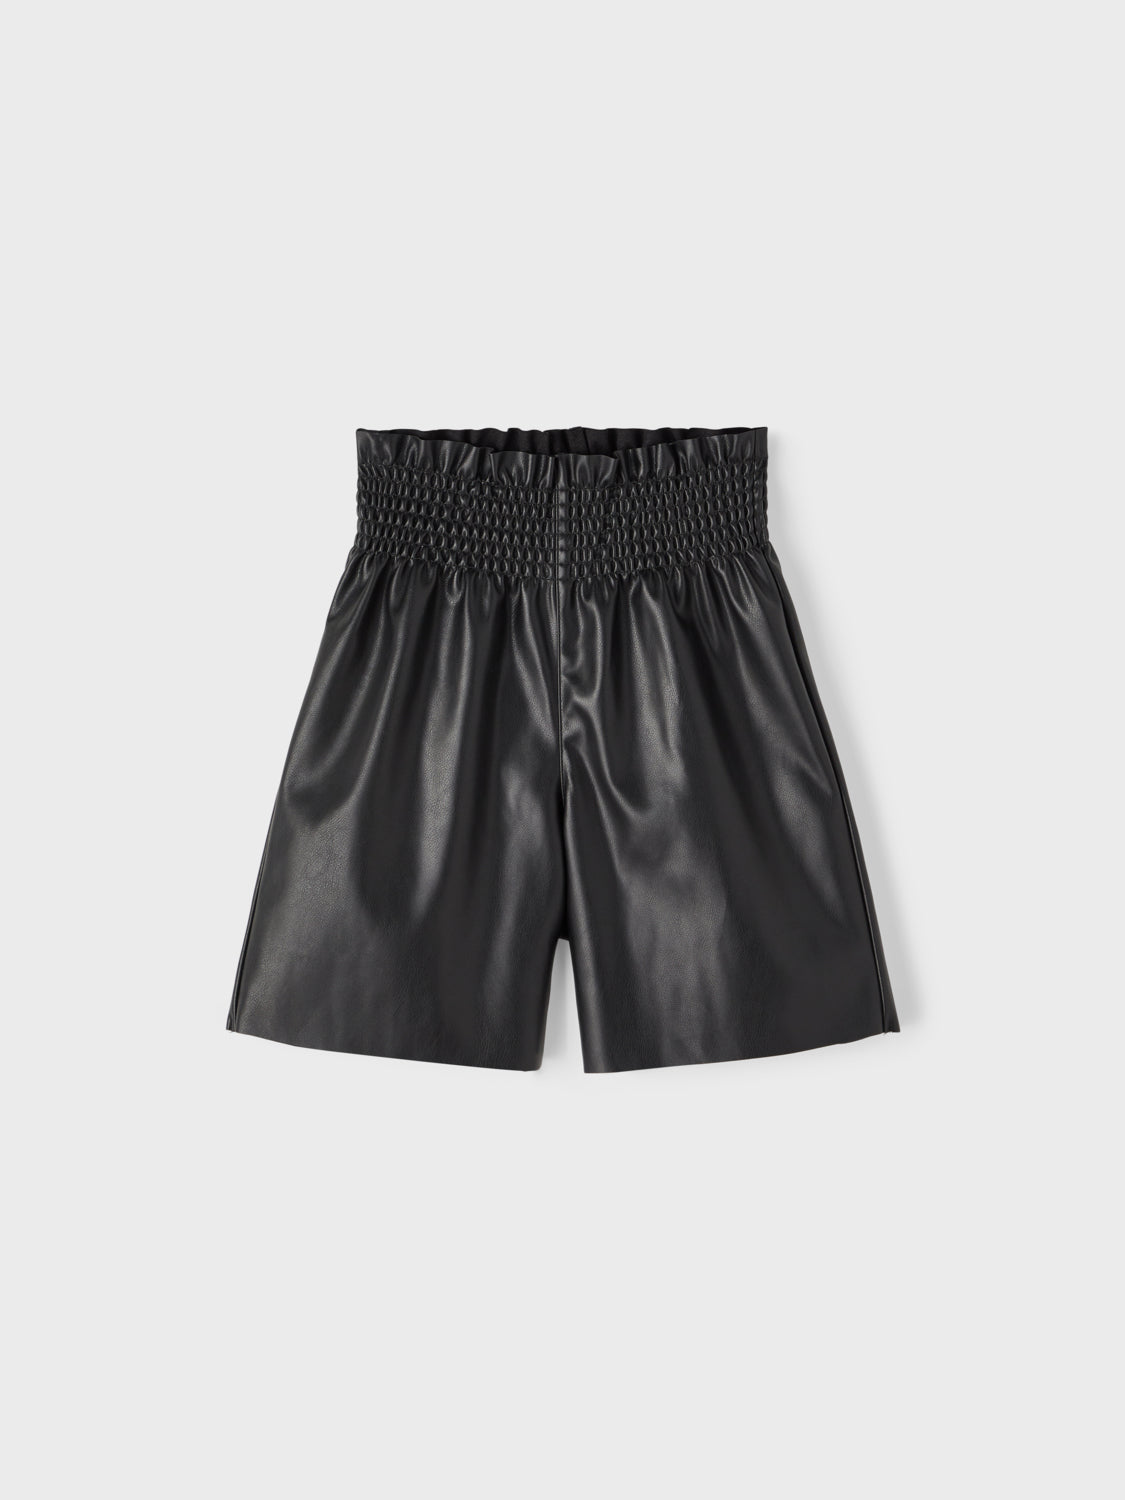 NKFLARITA Shorts - Black